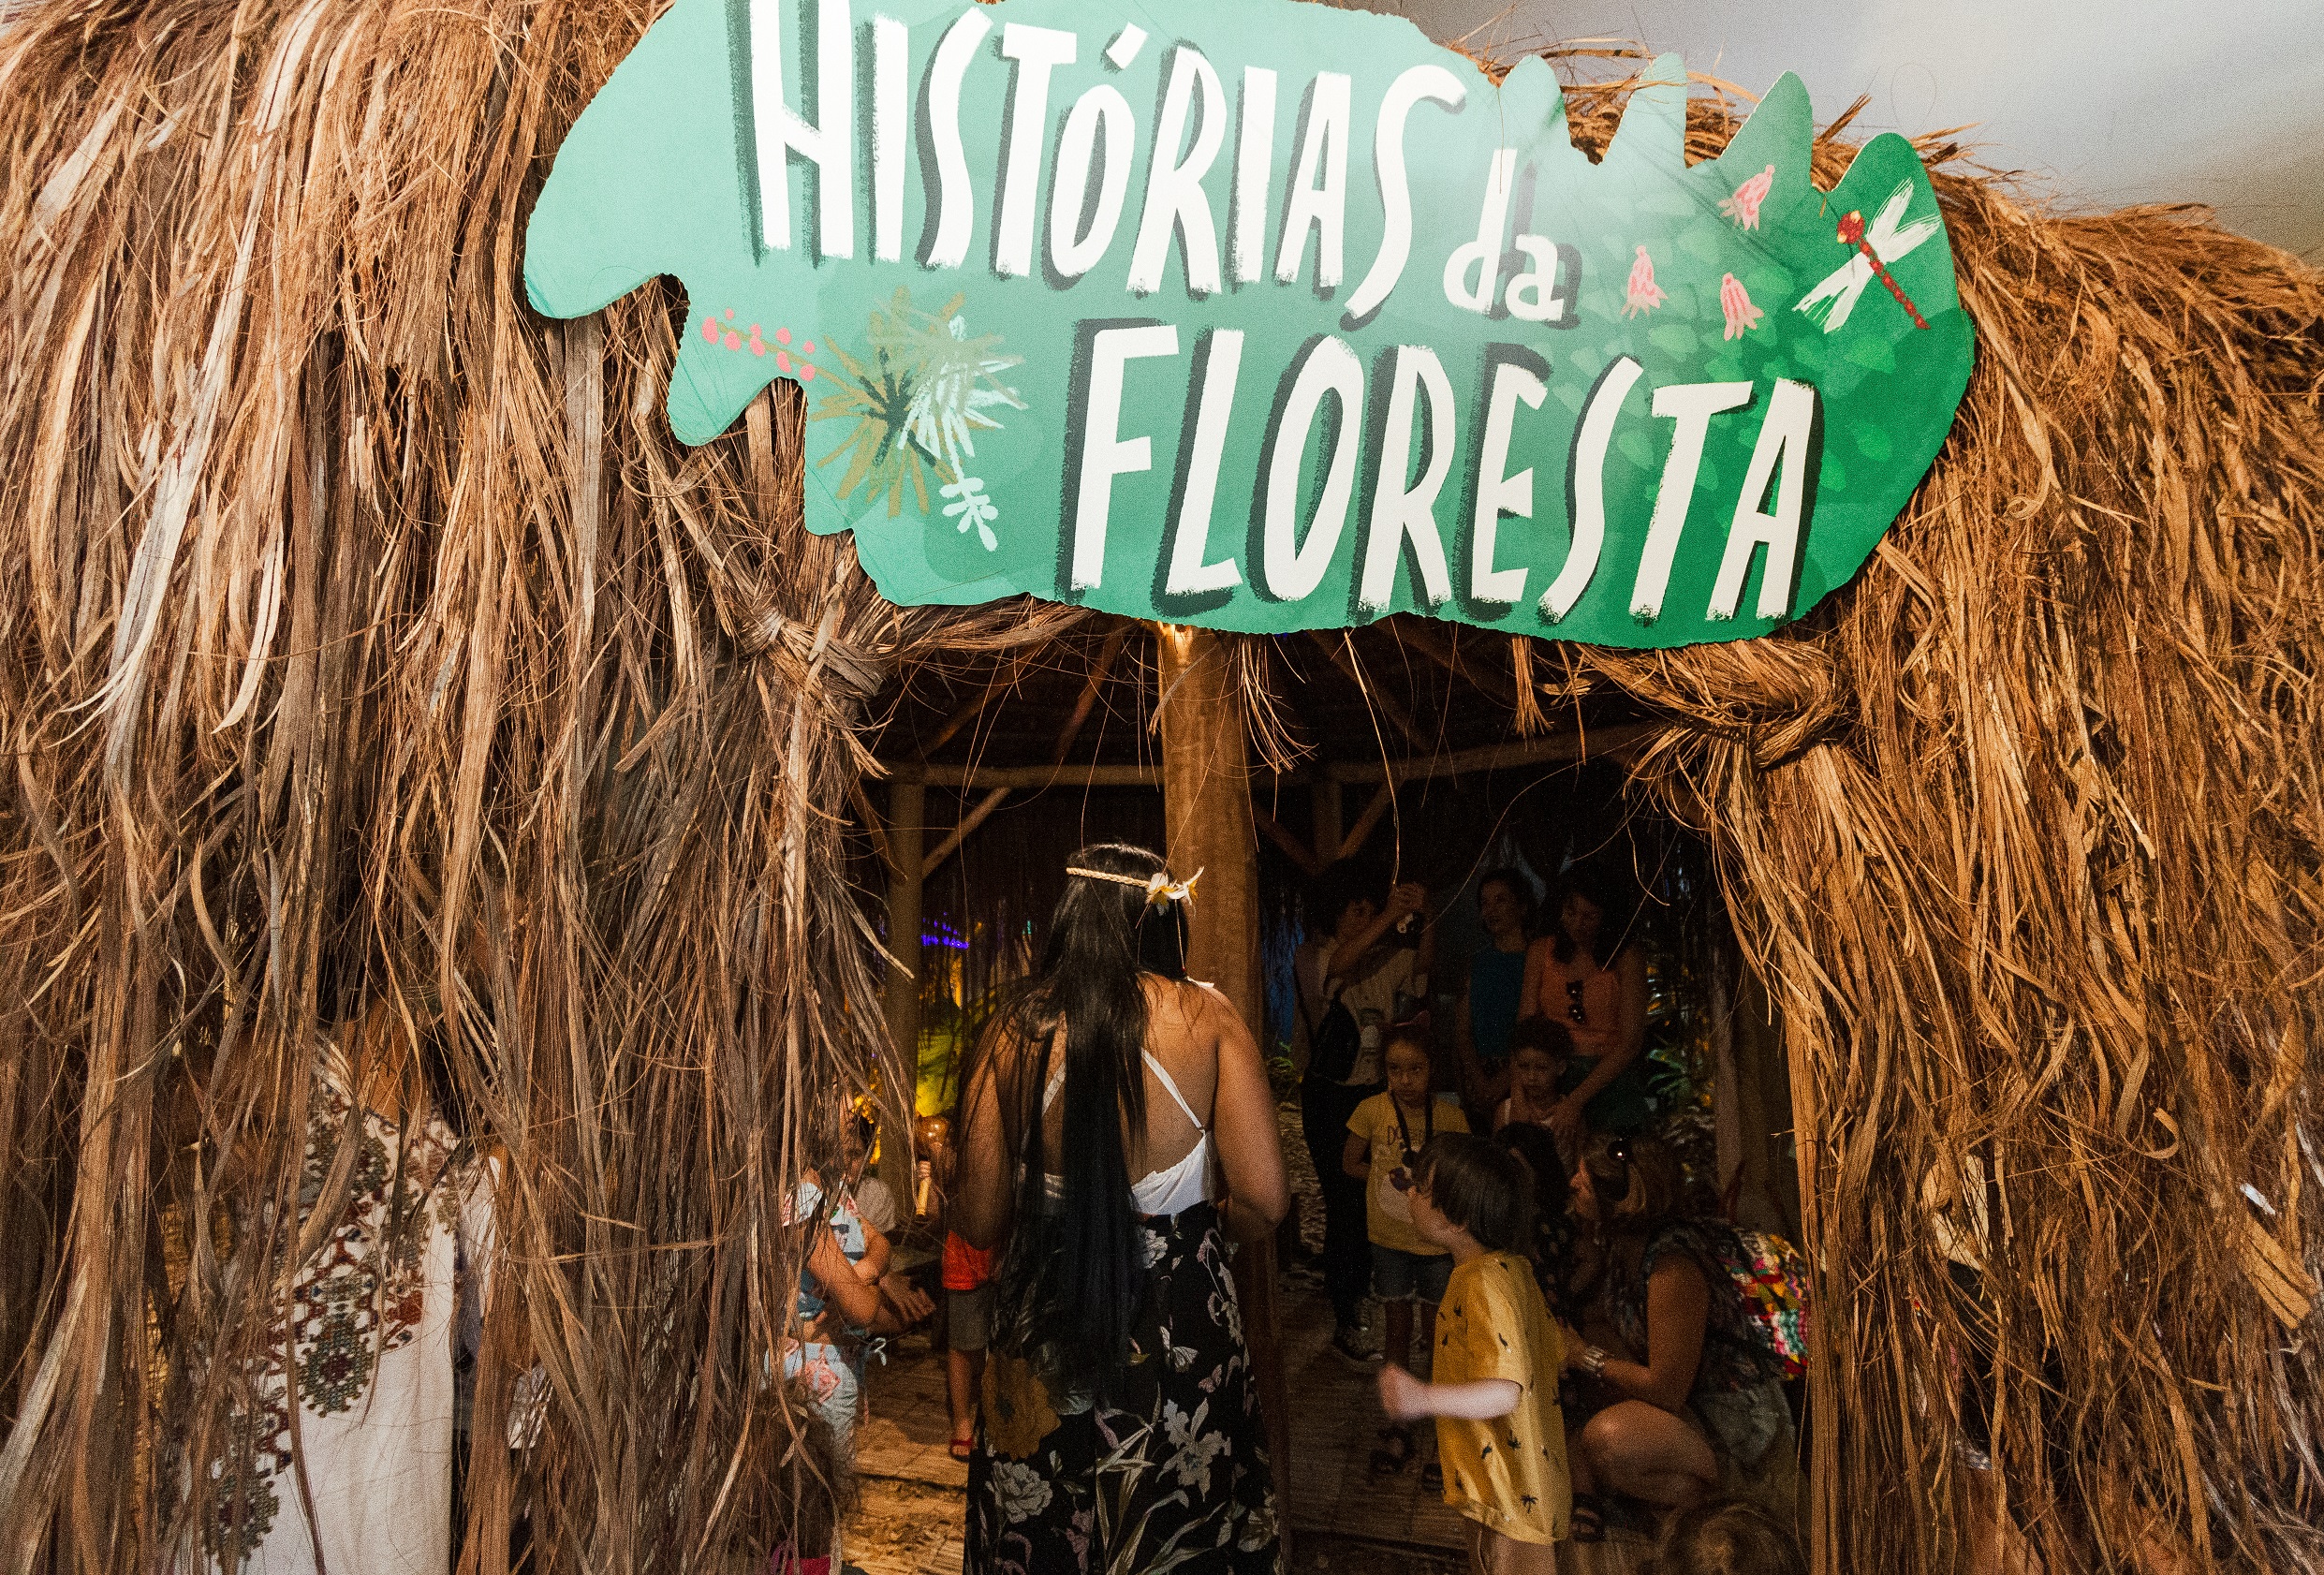 Histórias da Floresta – Festival Literário para Crianças acontece na CAIXA Cultural Fortaleza